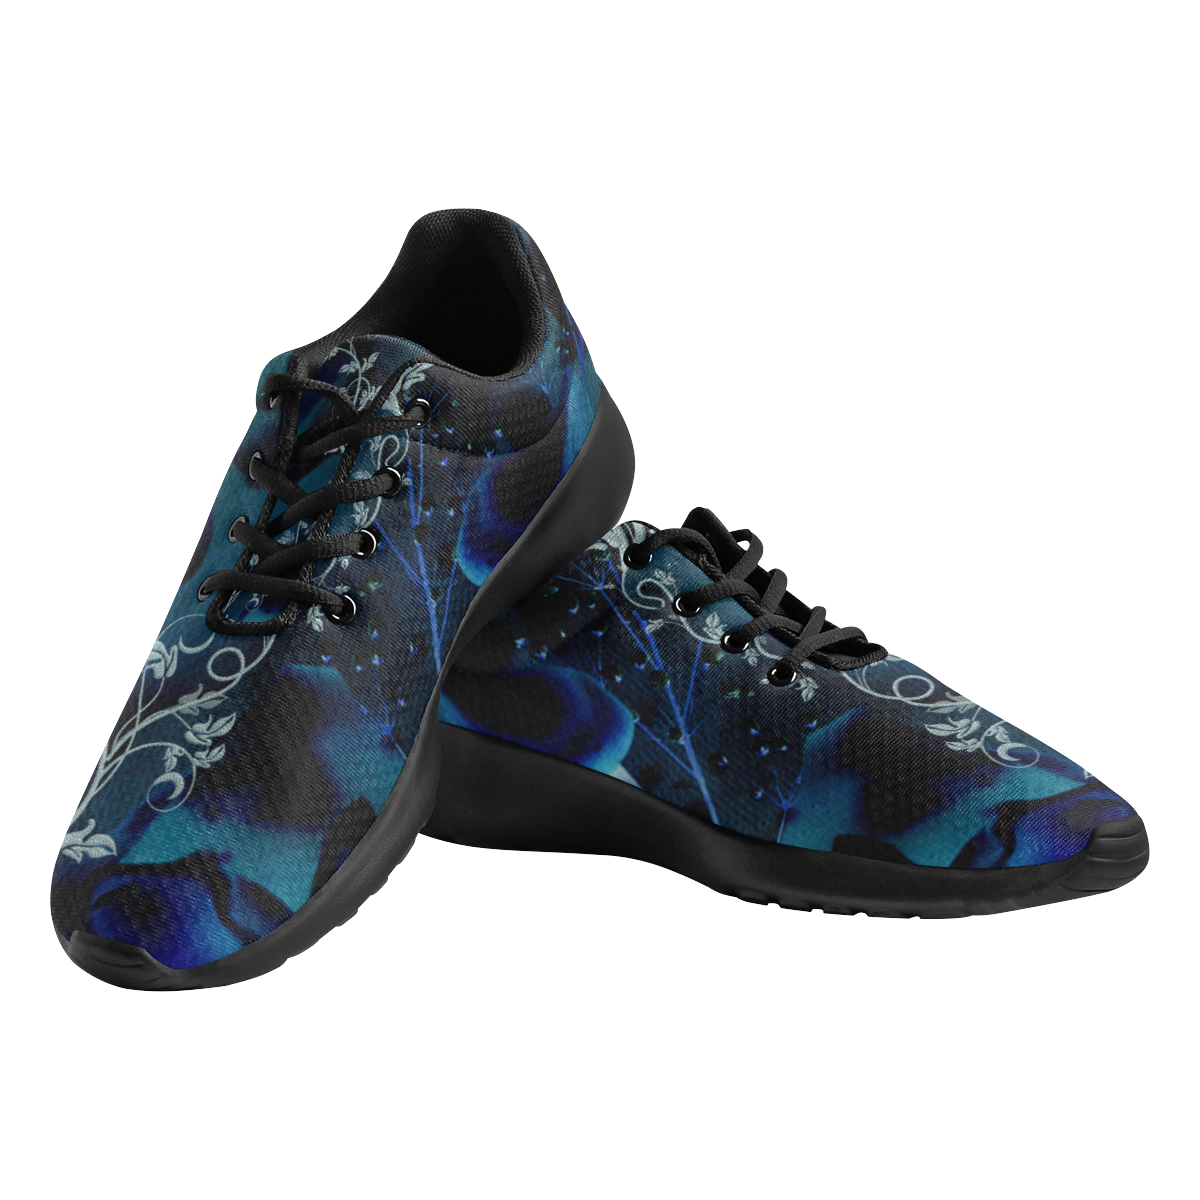 Floral design, blue colors Men's Athletic Shoes (Model 0200)